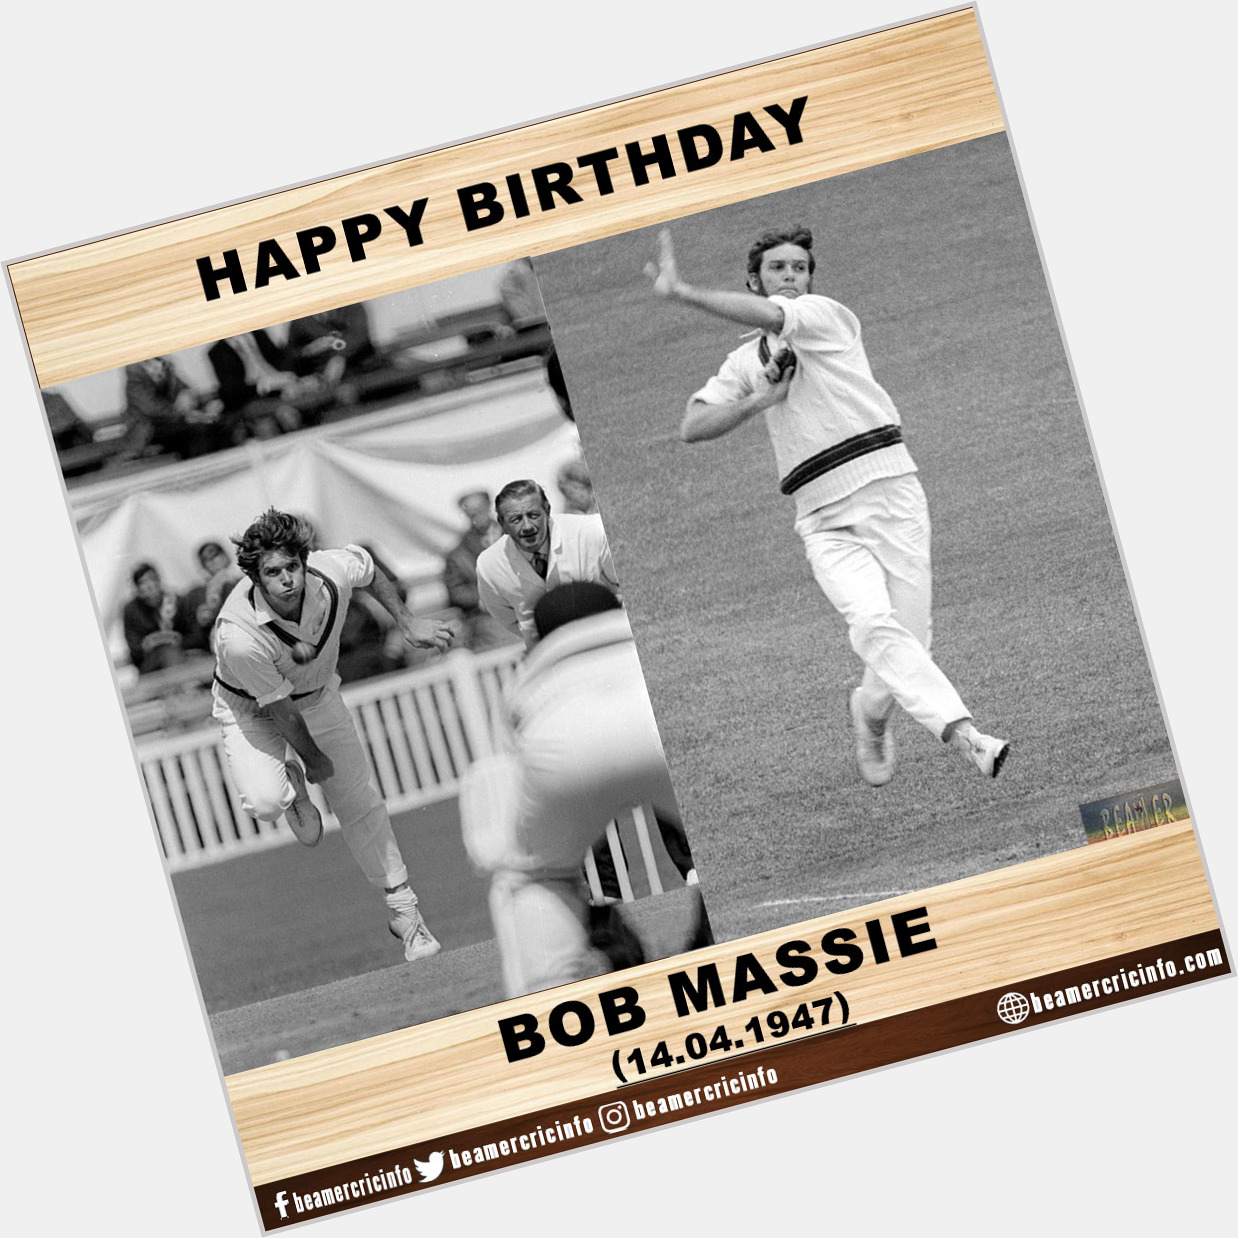 Happy Birthday!!!
Bob Massie...     